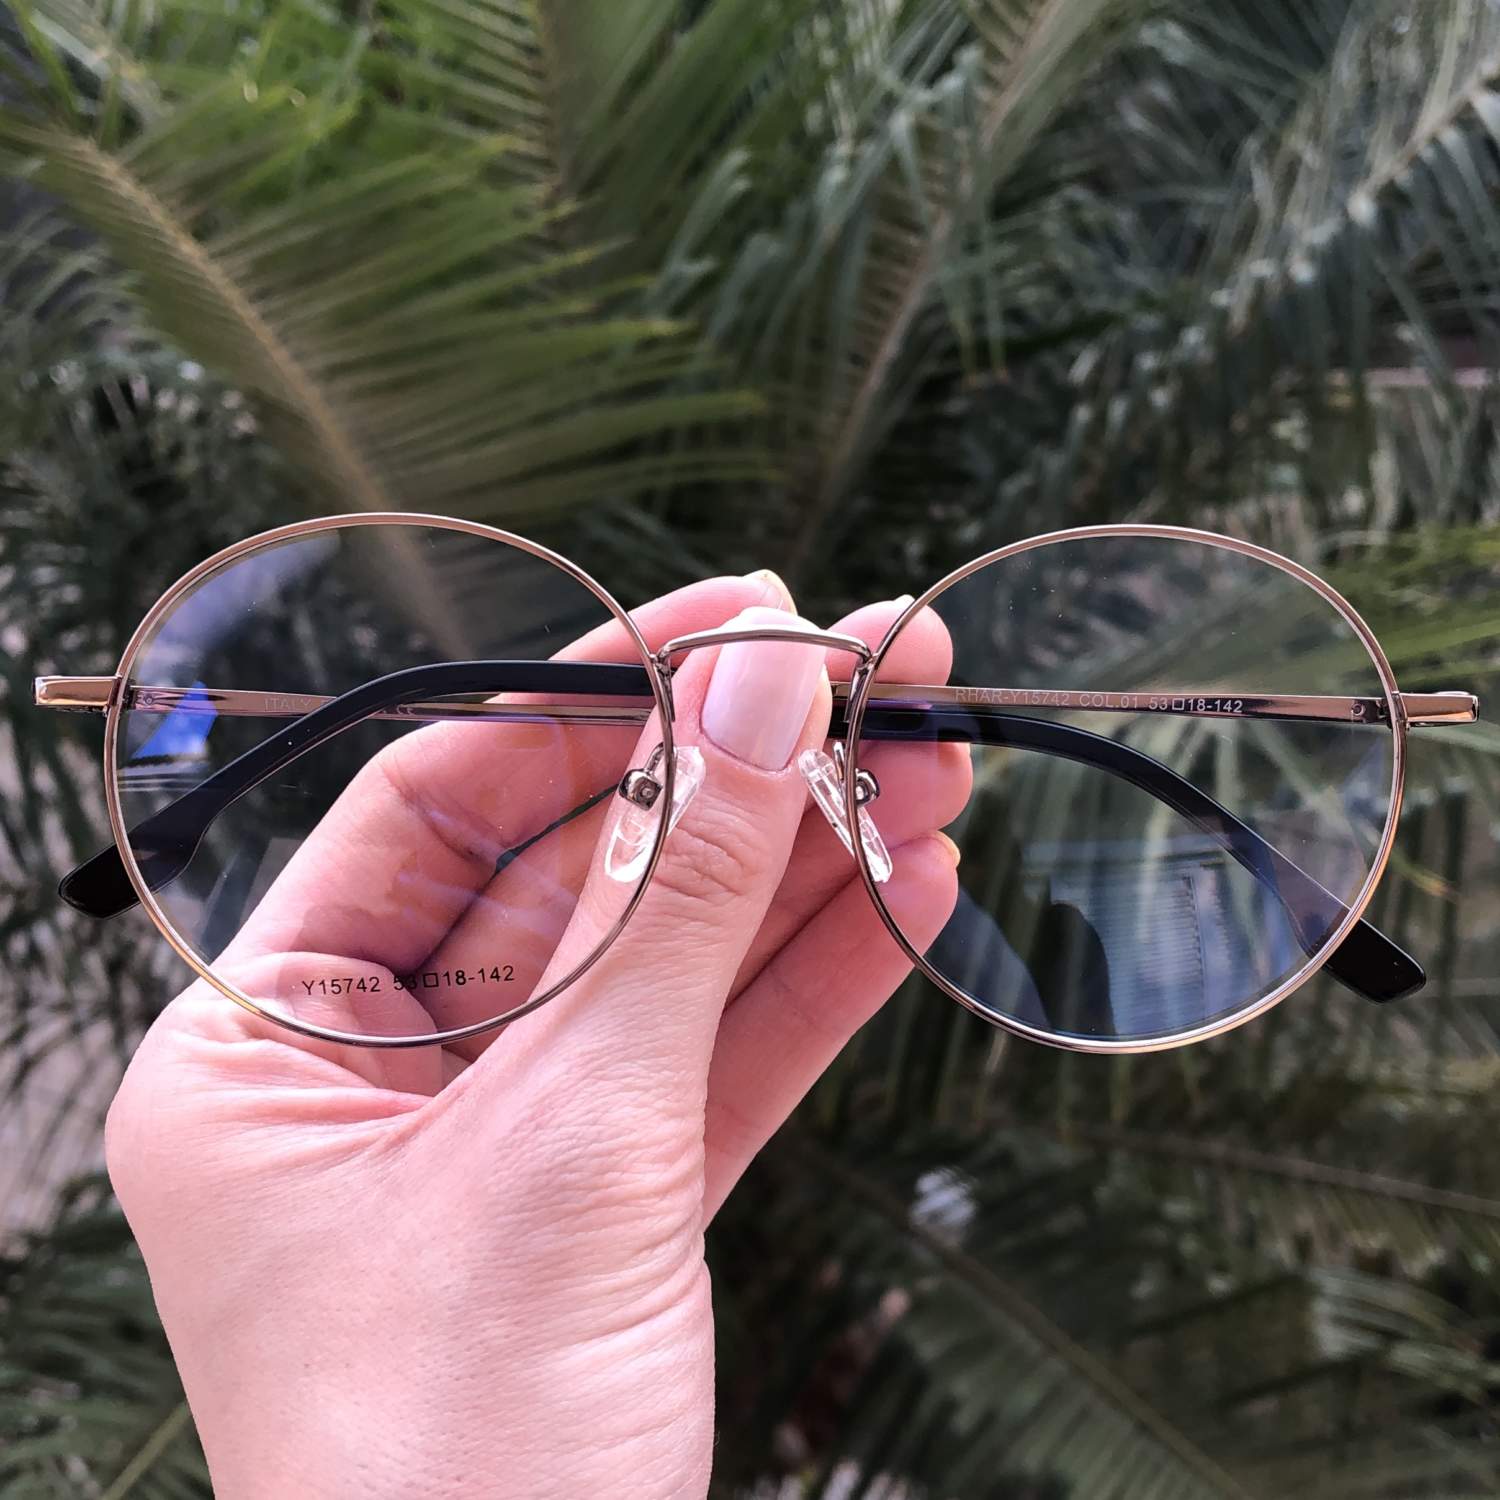 oculos juliet feminino em Promoção na Shopee Brasil 2023